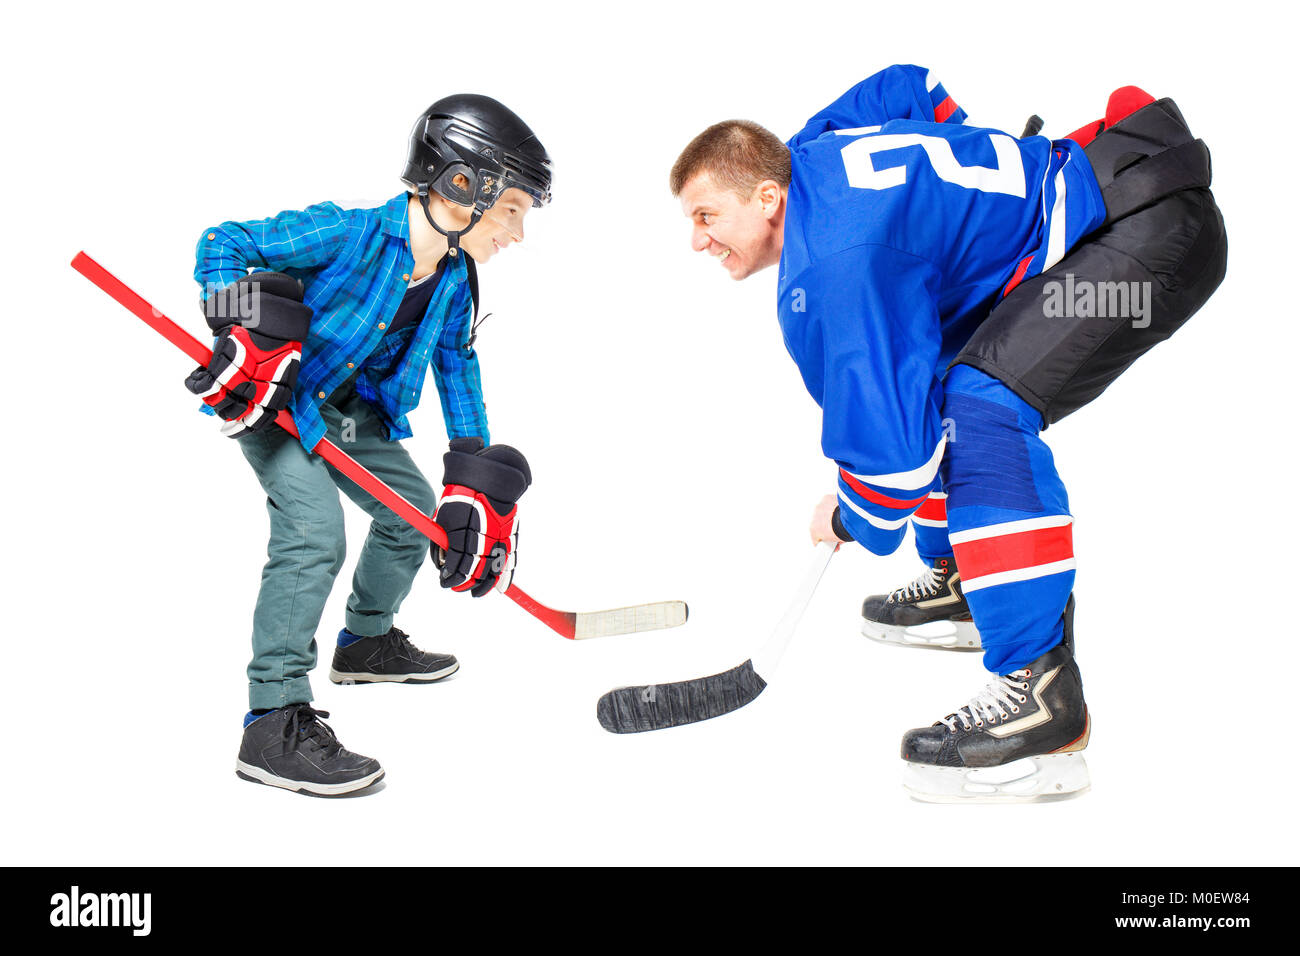 Les joueurs de hockey sur glace Concept isolé sur fond blanc. Man and boy playing game Banque D'Images